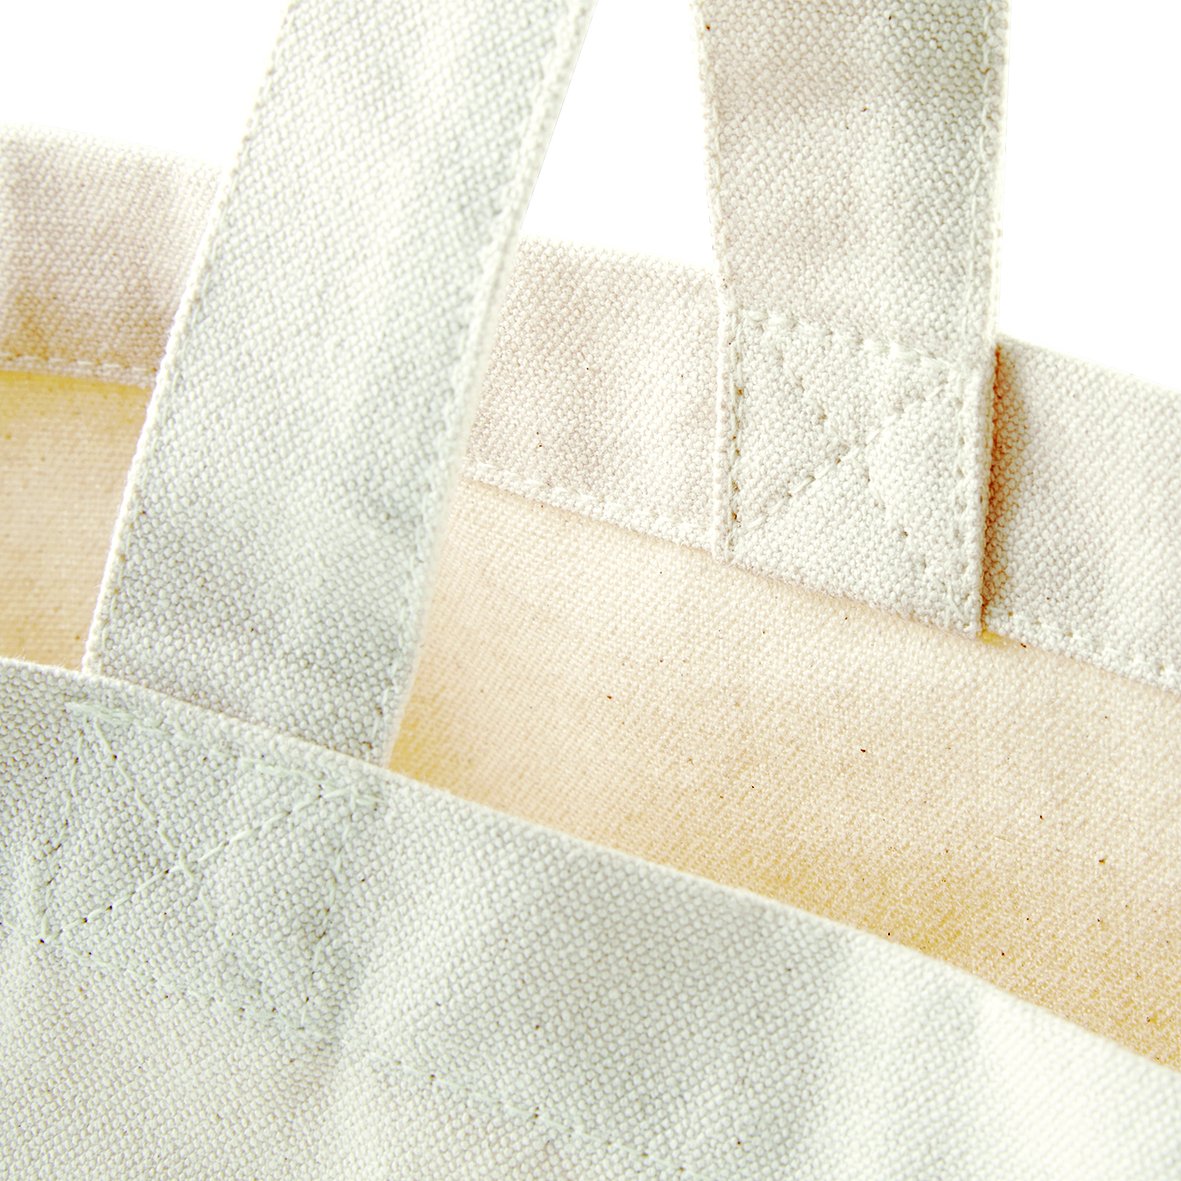 Fairtrade Cotton Shopping Bag